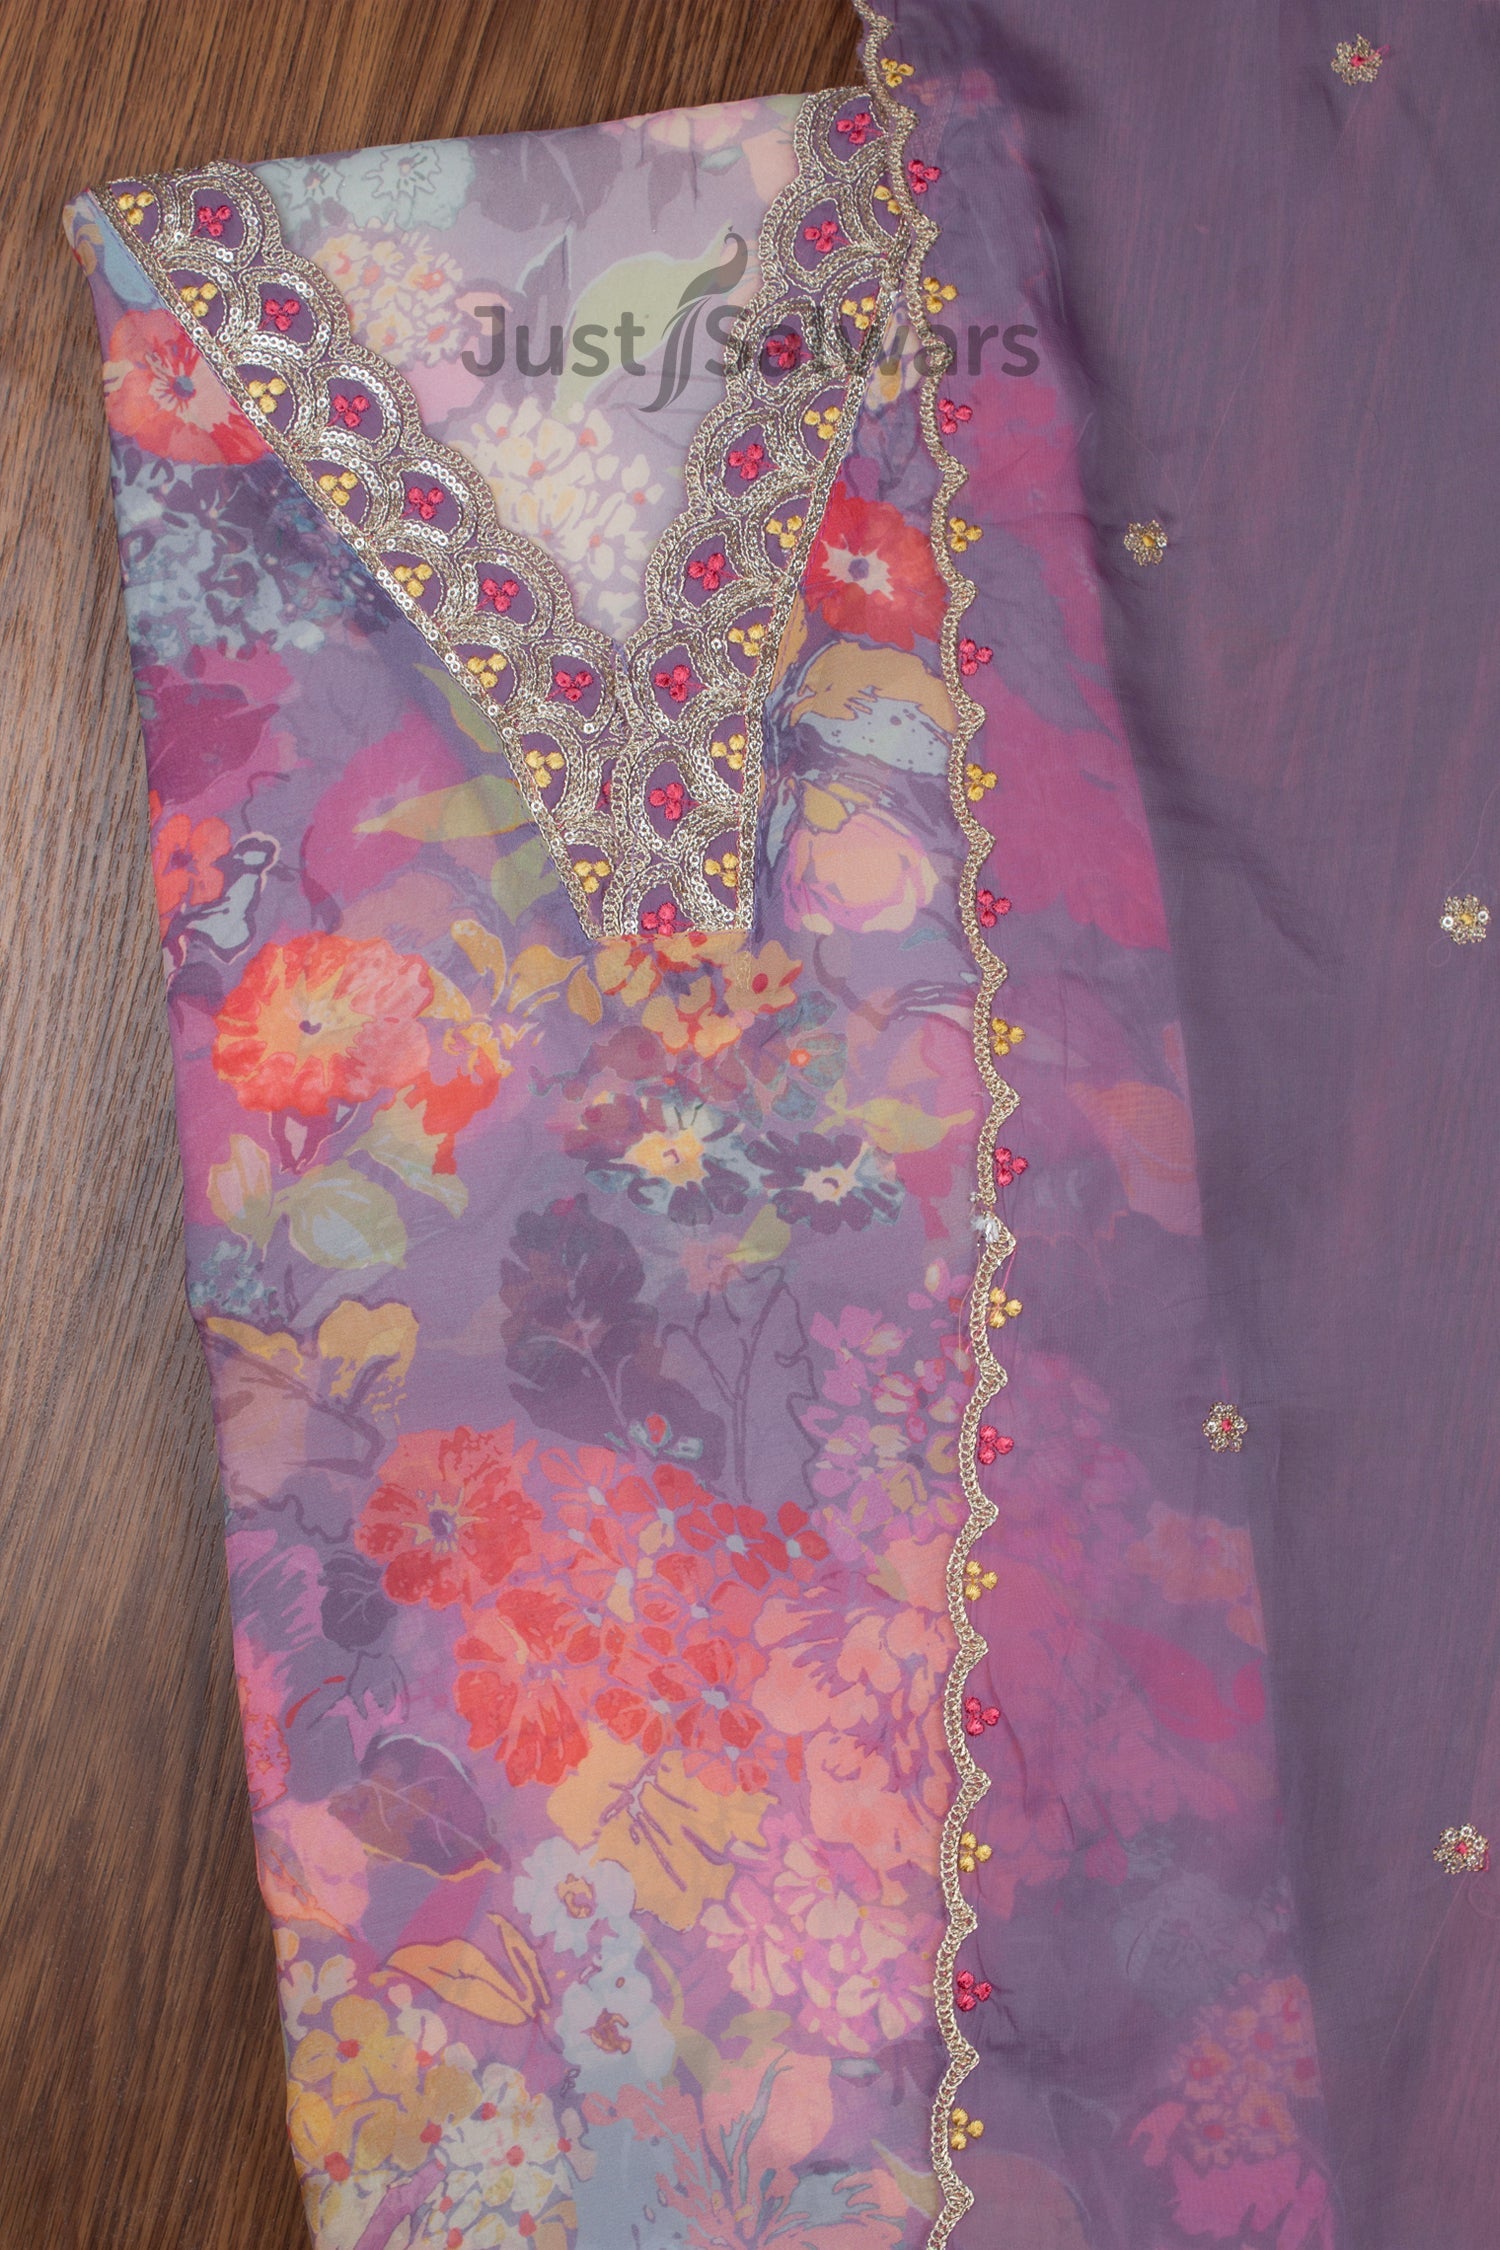 FS999 Botanic Floral White Navy Material Stretch Jersey Scuba Knit Dress  Fabric | eBay